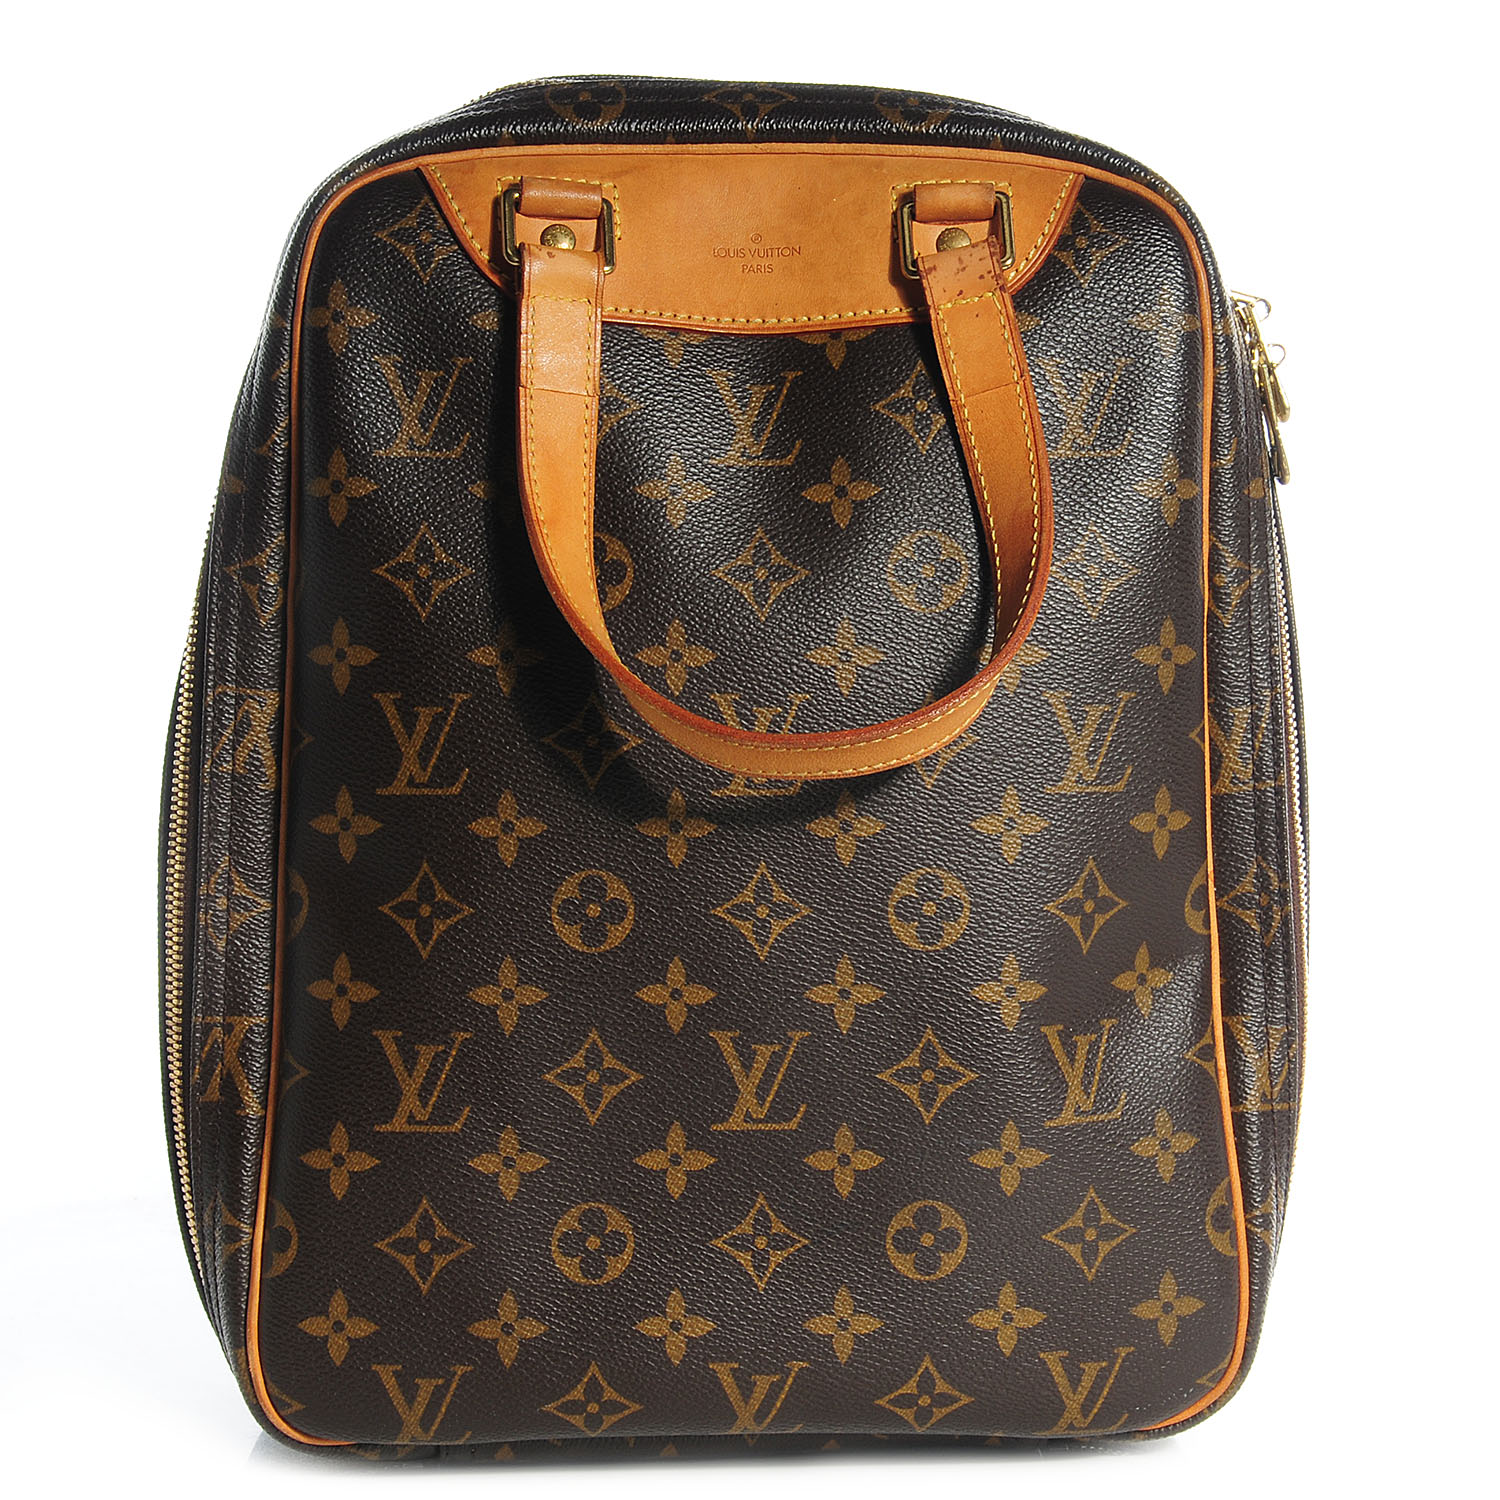 Buy Online Louis Vuitton-MONO EXCURSION SHOE BAG-M41450 at